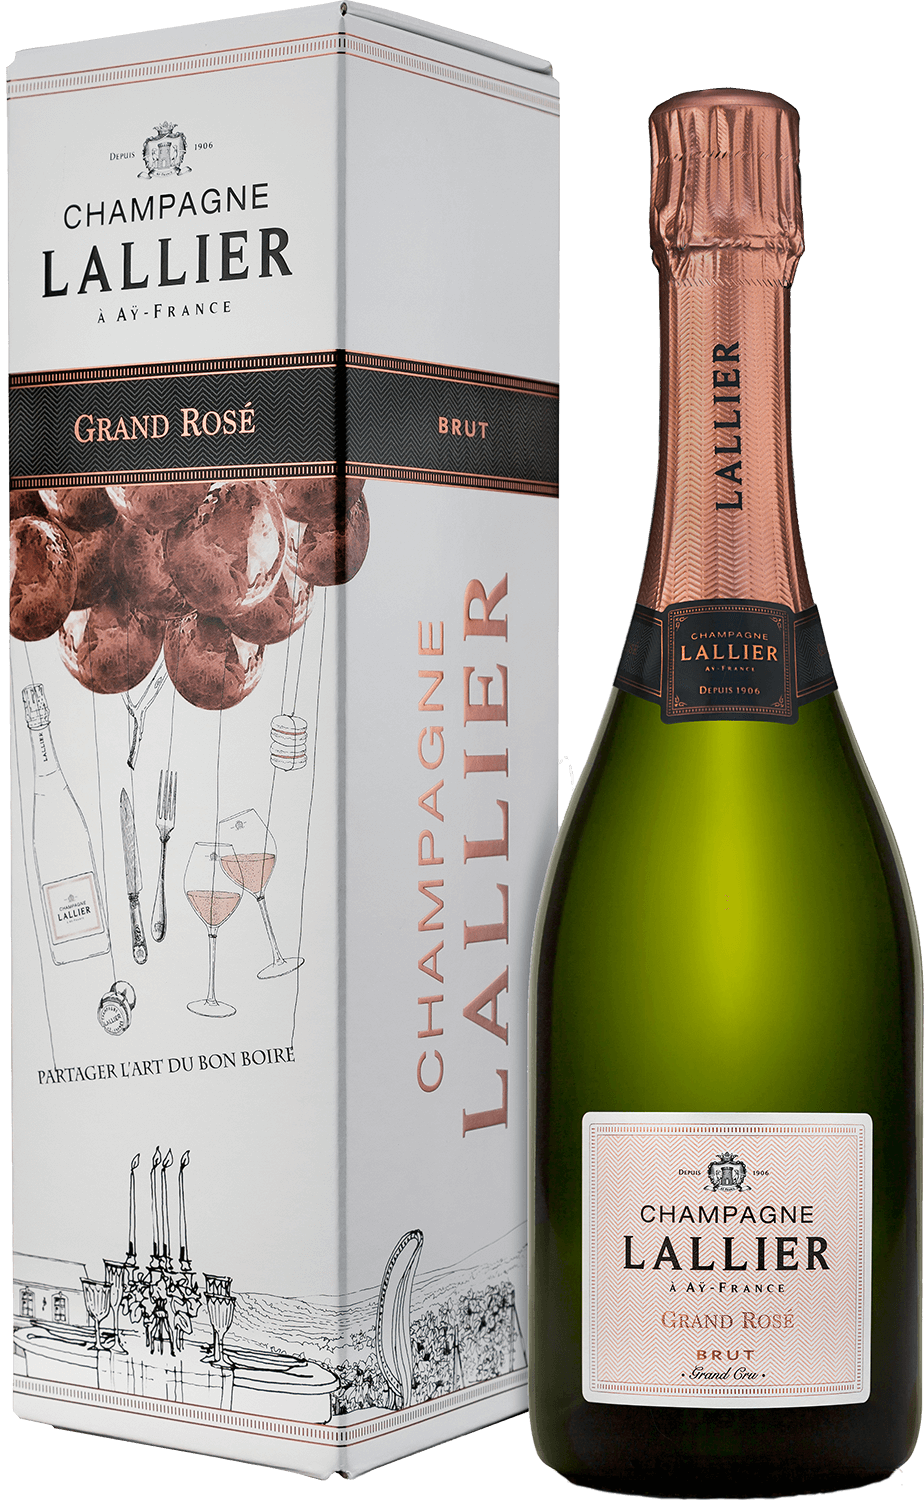 Lallier Grand Rose Brut Grand Cru Champagne AOC (gift box) mailly grand cru rose de mailly brut champagne aoc